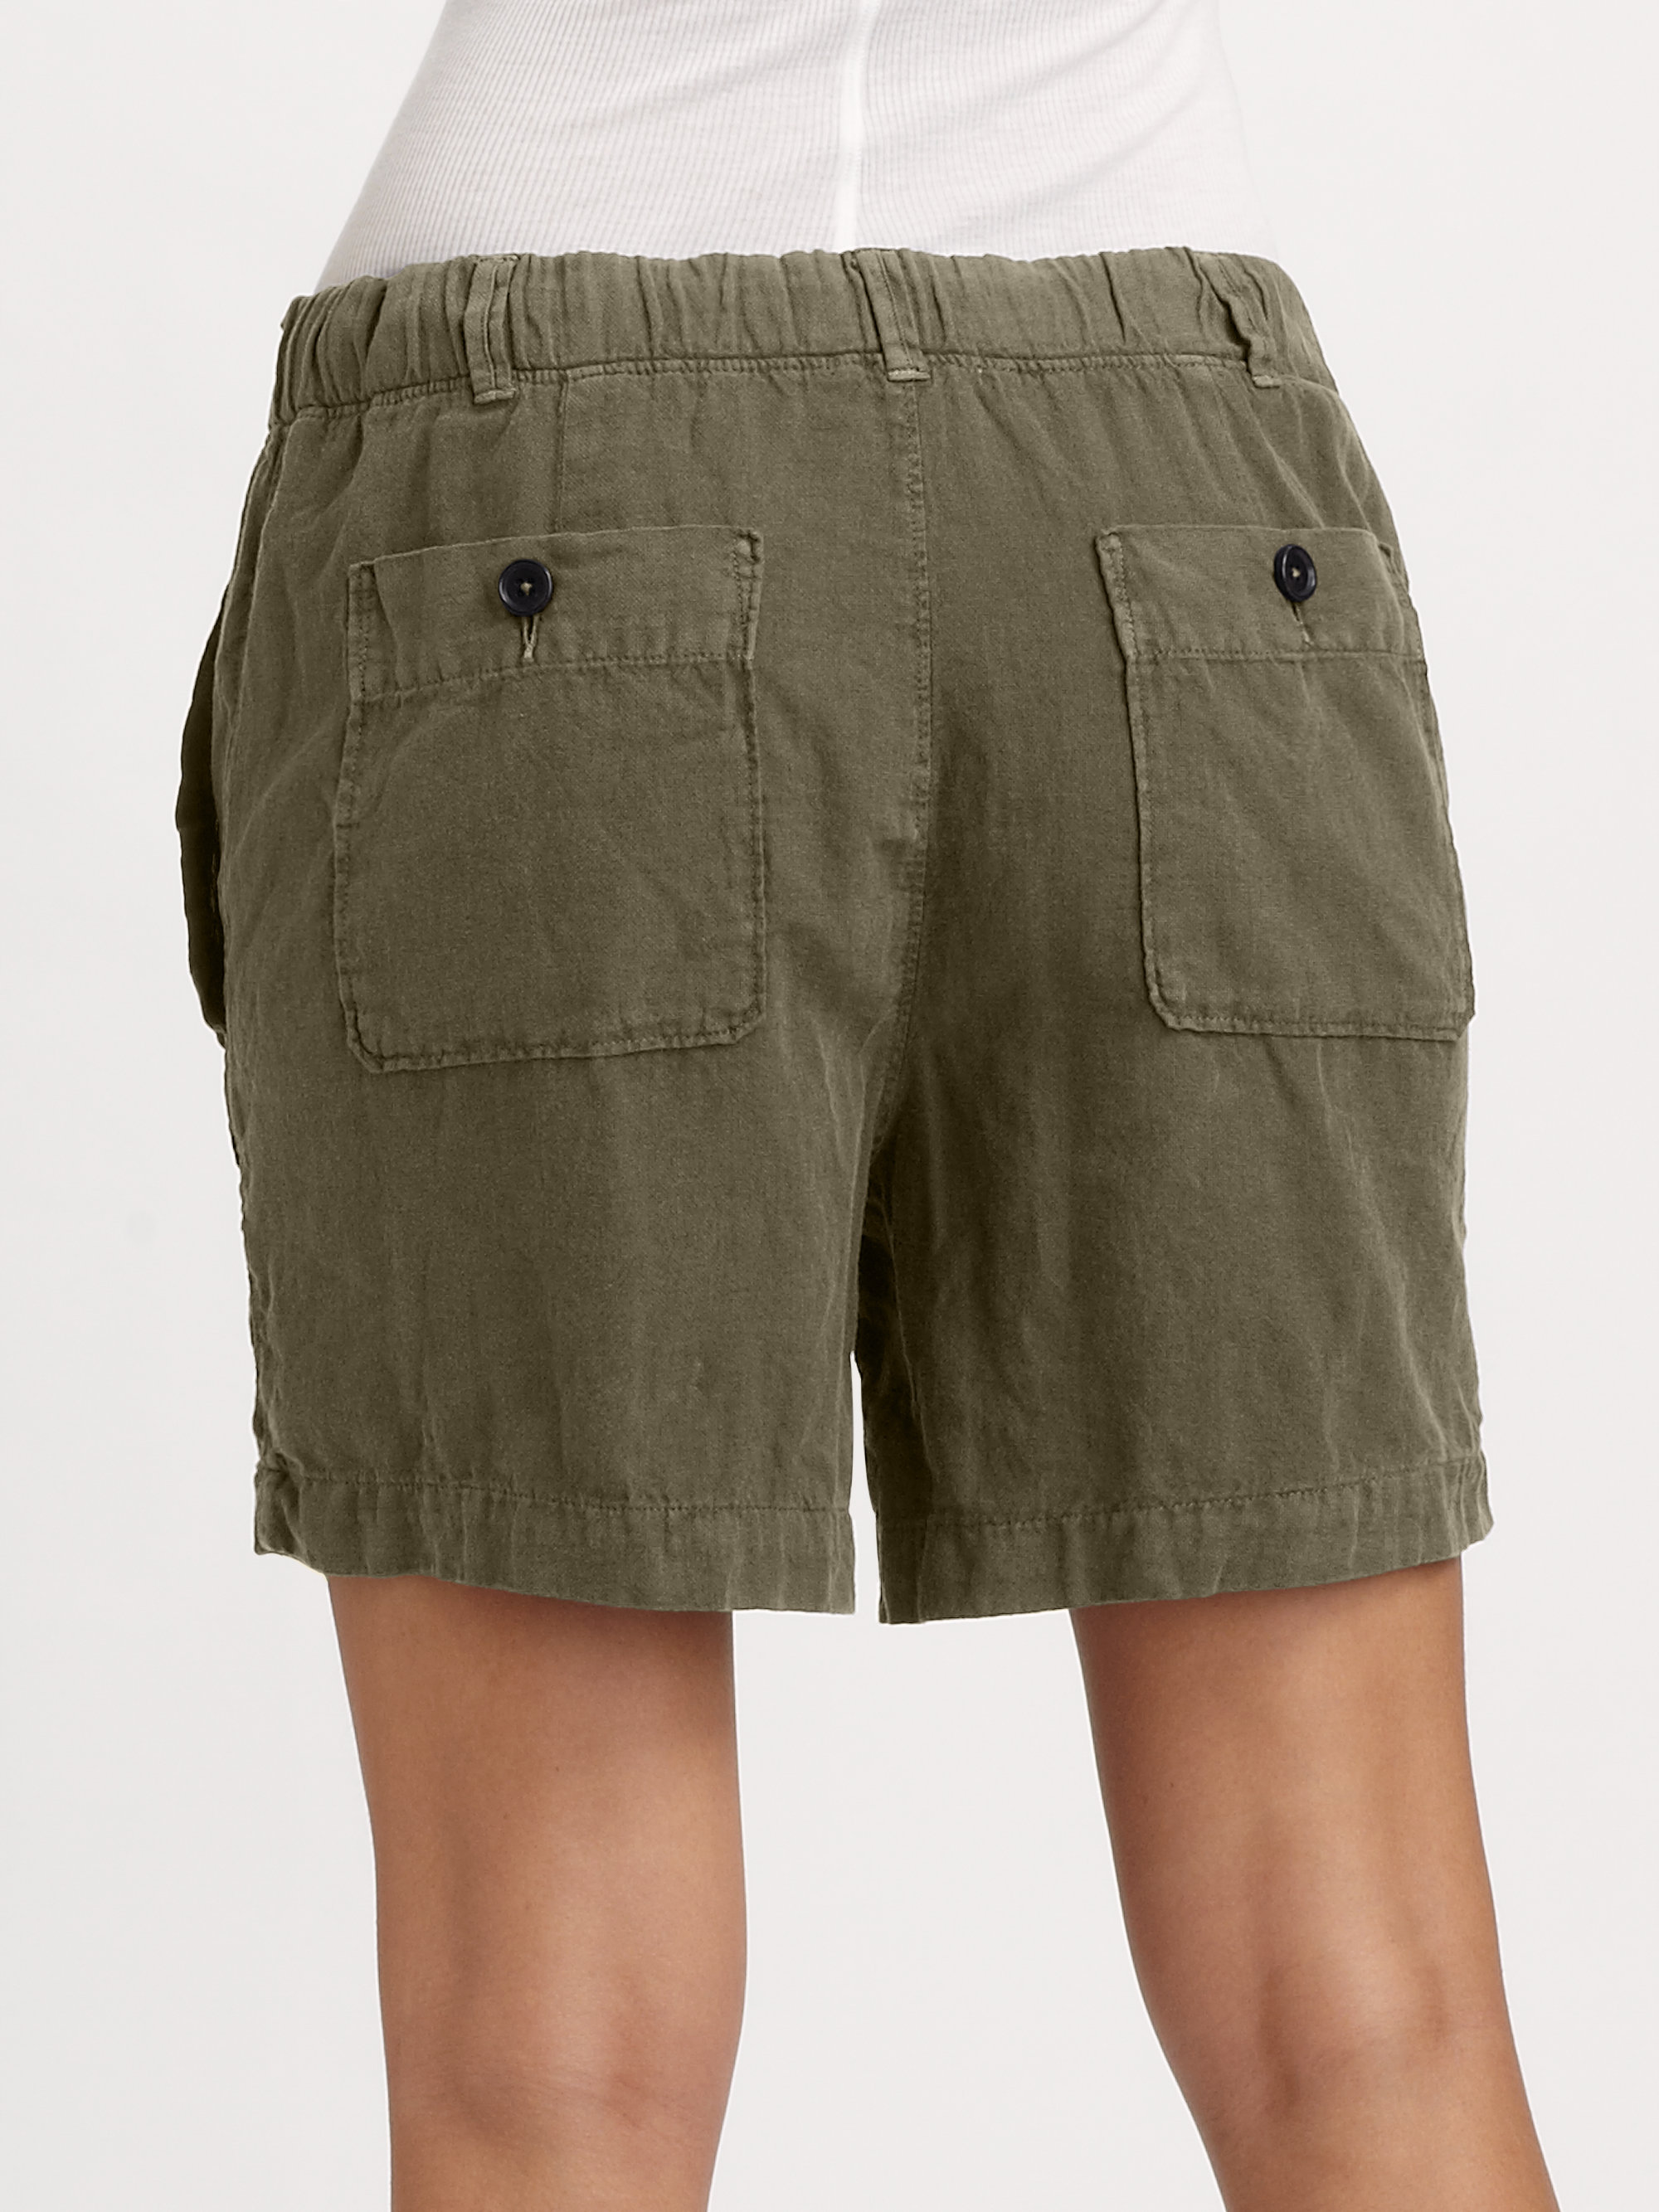 safari guide shorts